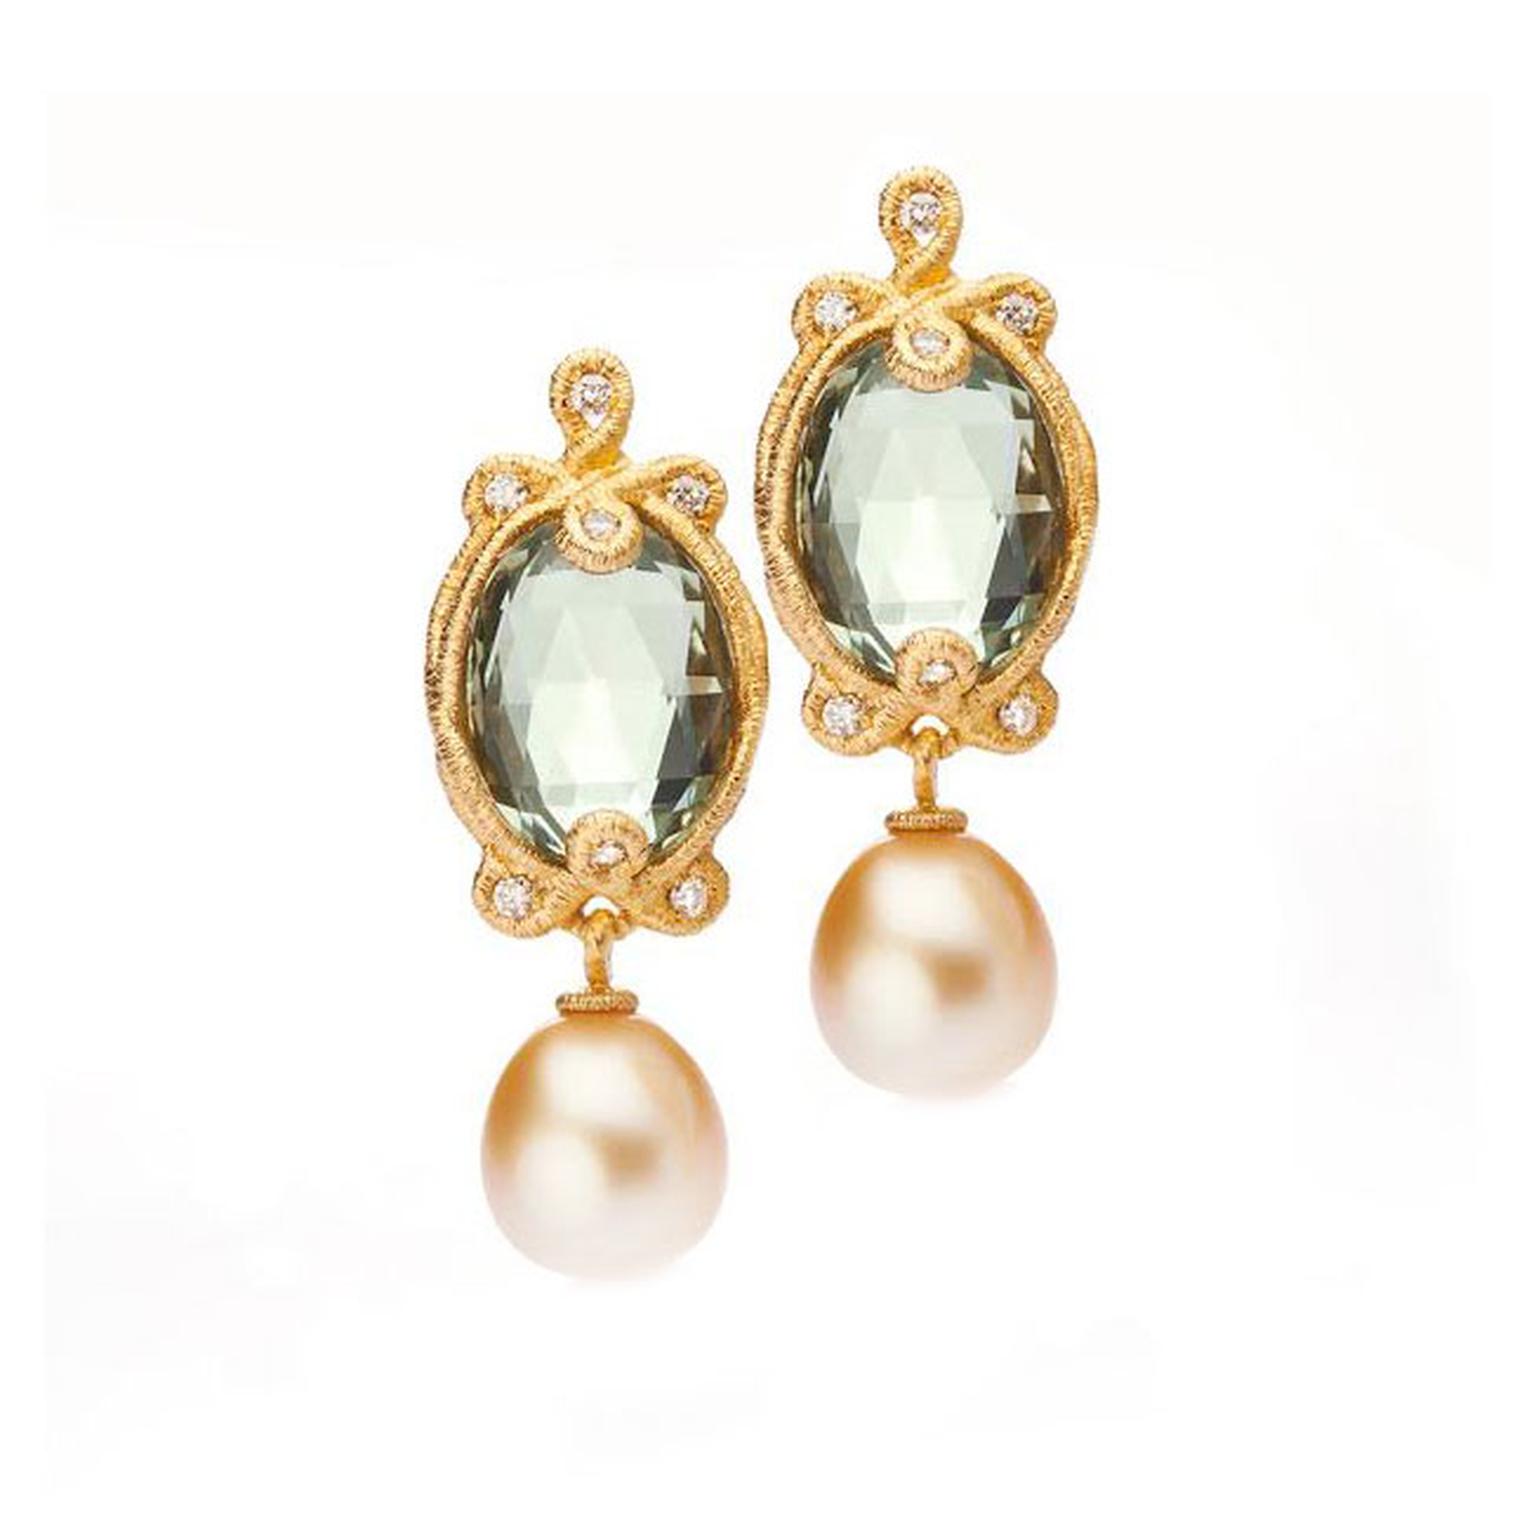 Brigitte Adolph pearl earrings